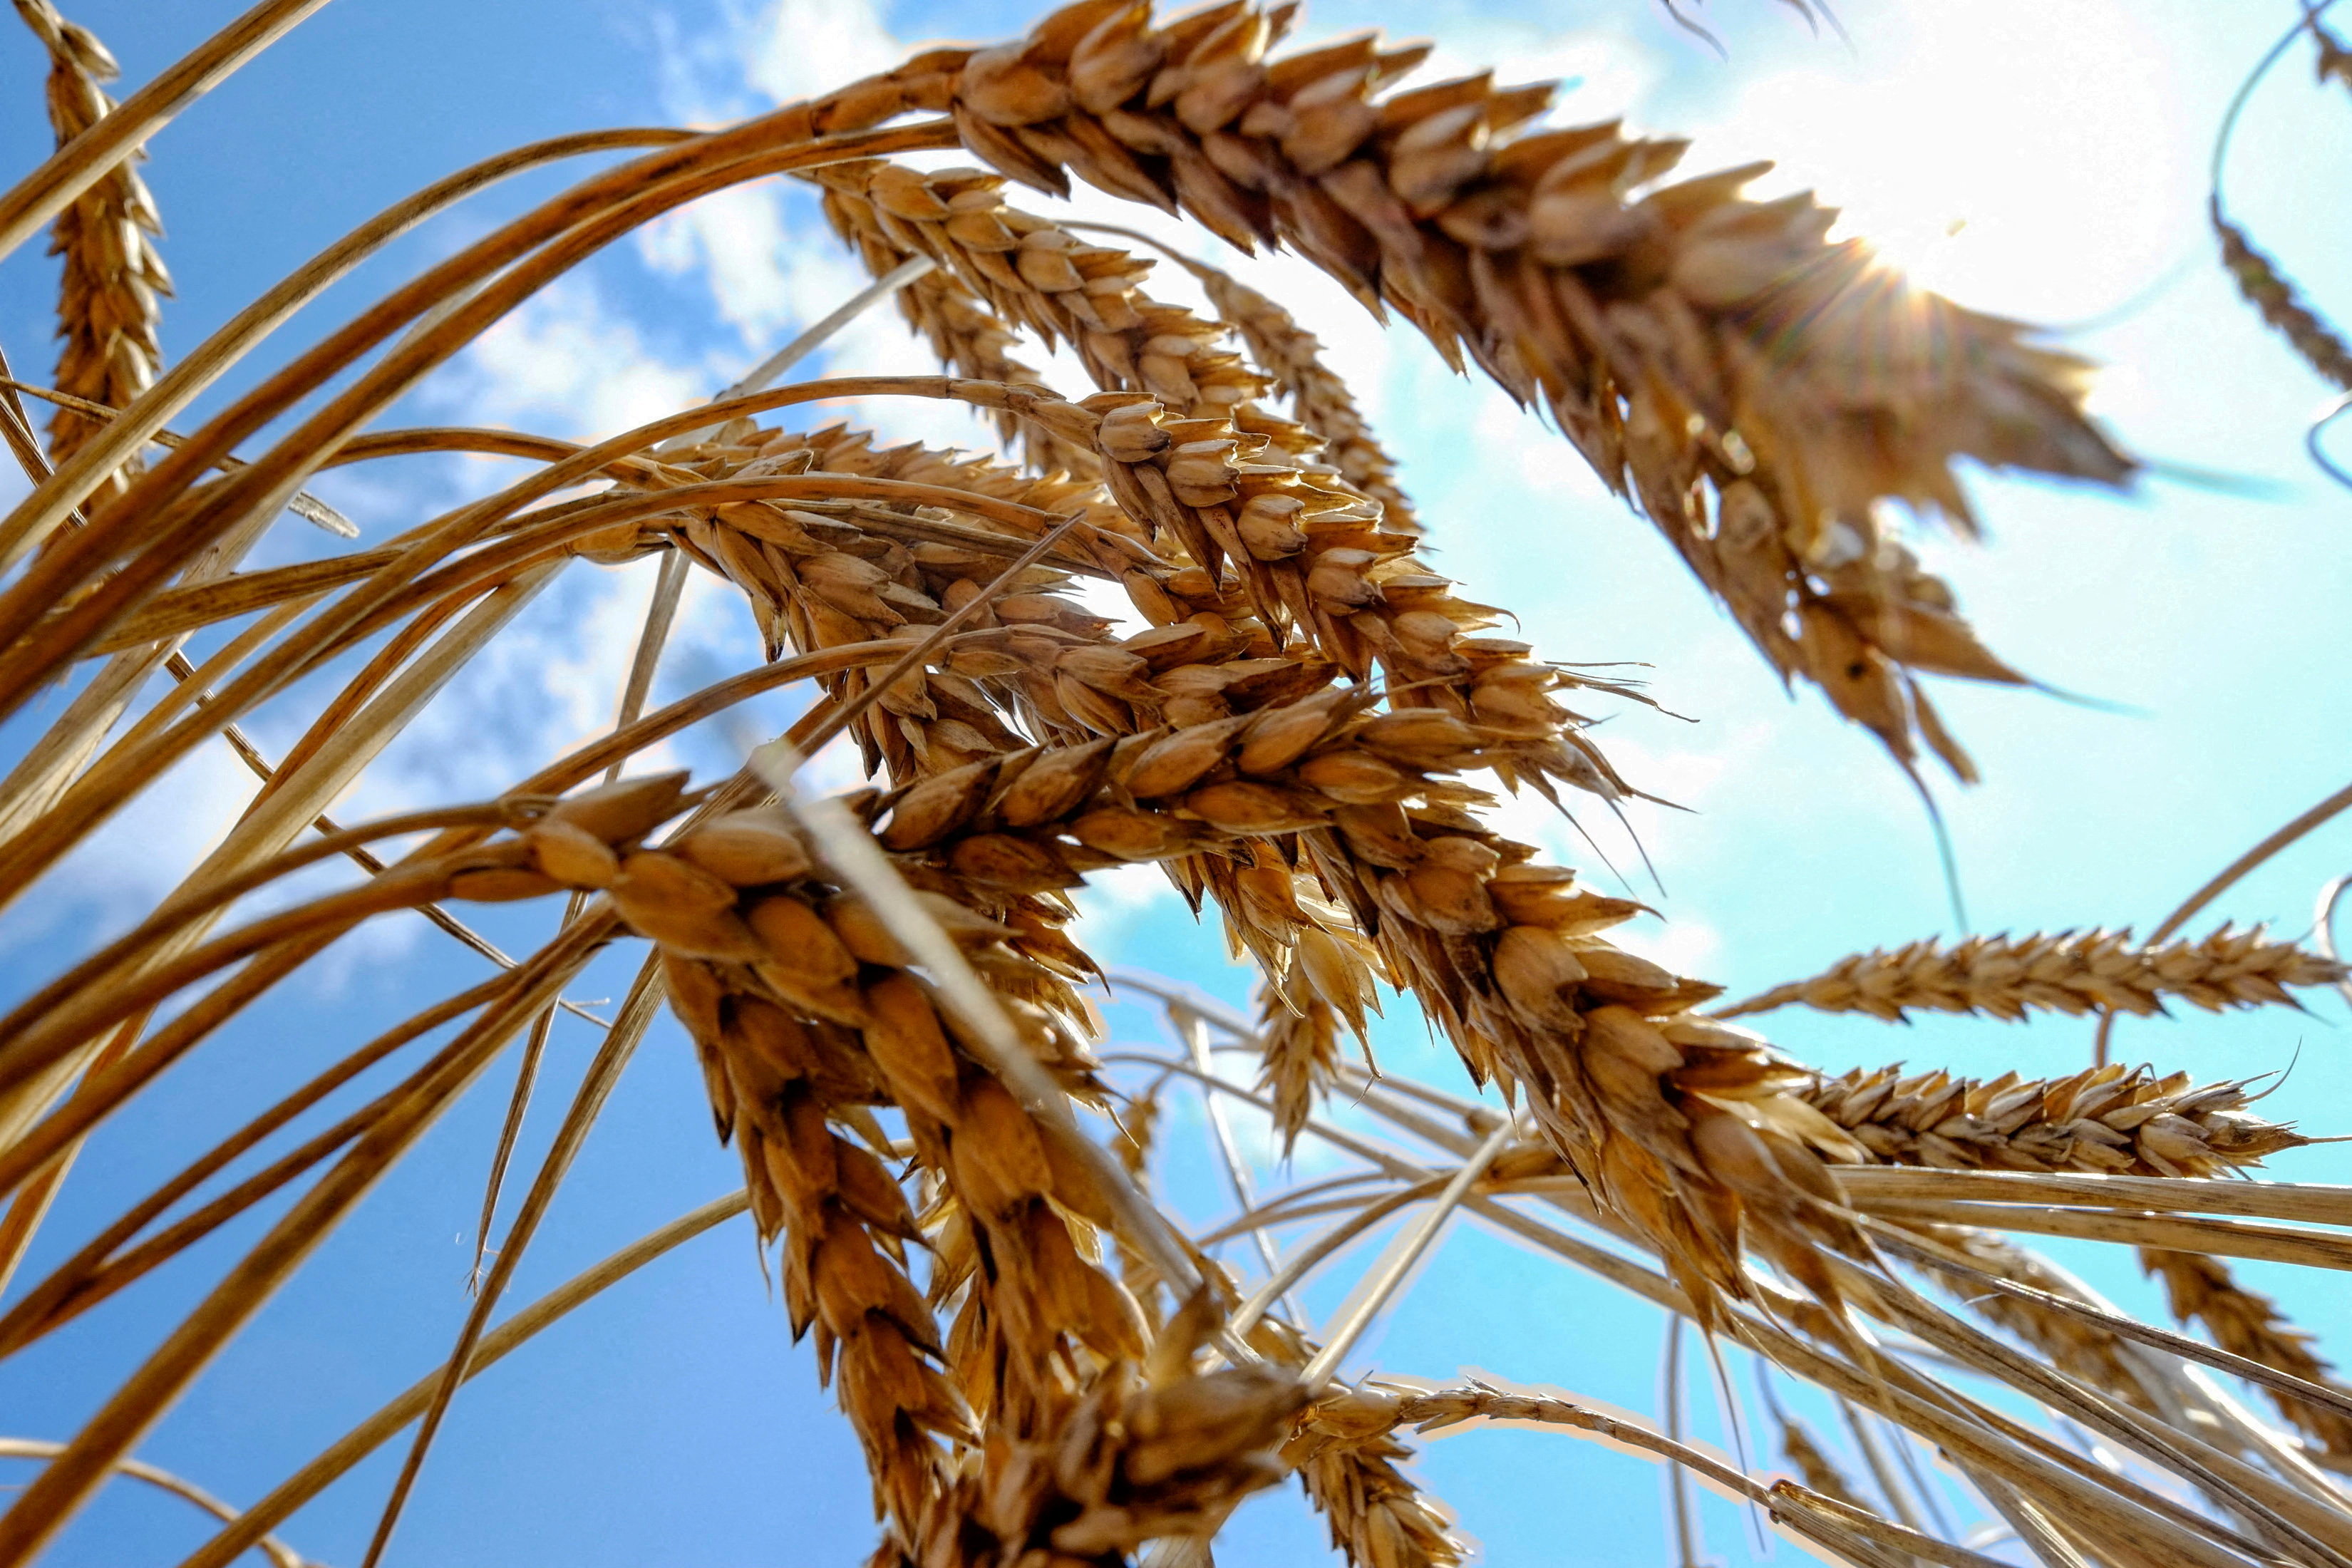 Wheat is seen in a field in Nikolaev